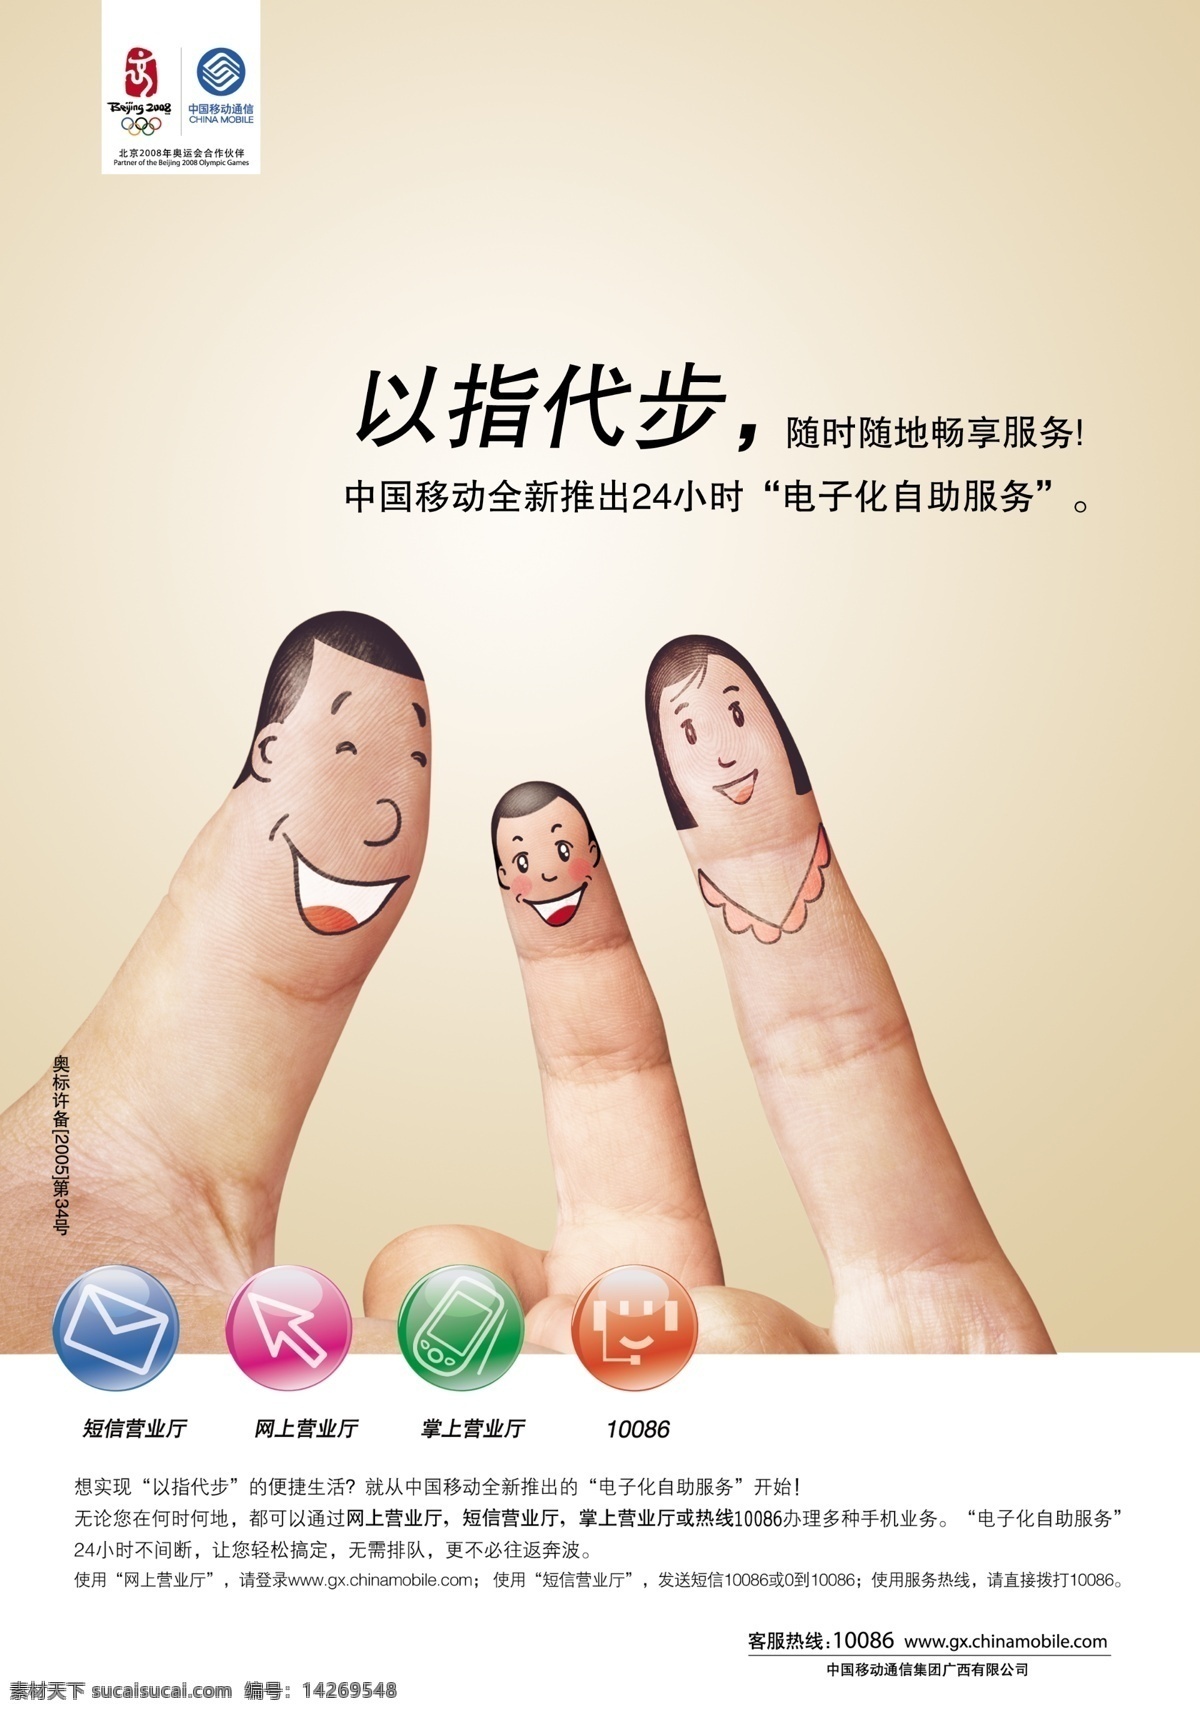 中国移动 广告设计模板 小图标 源文件 中国移动通信 手指图案 其他海报设计